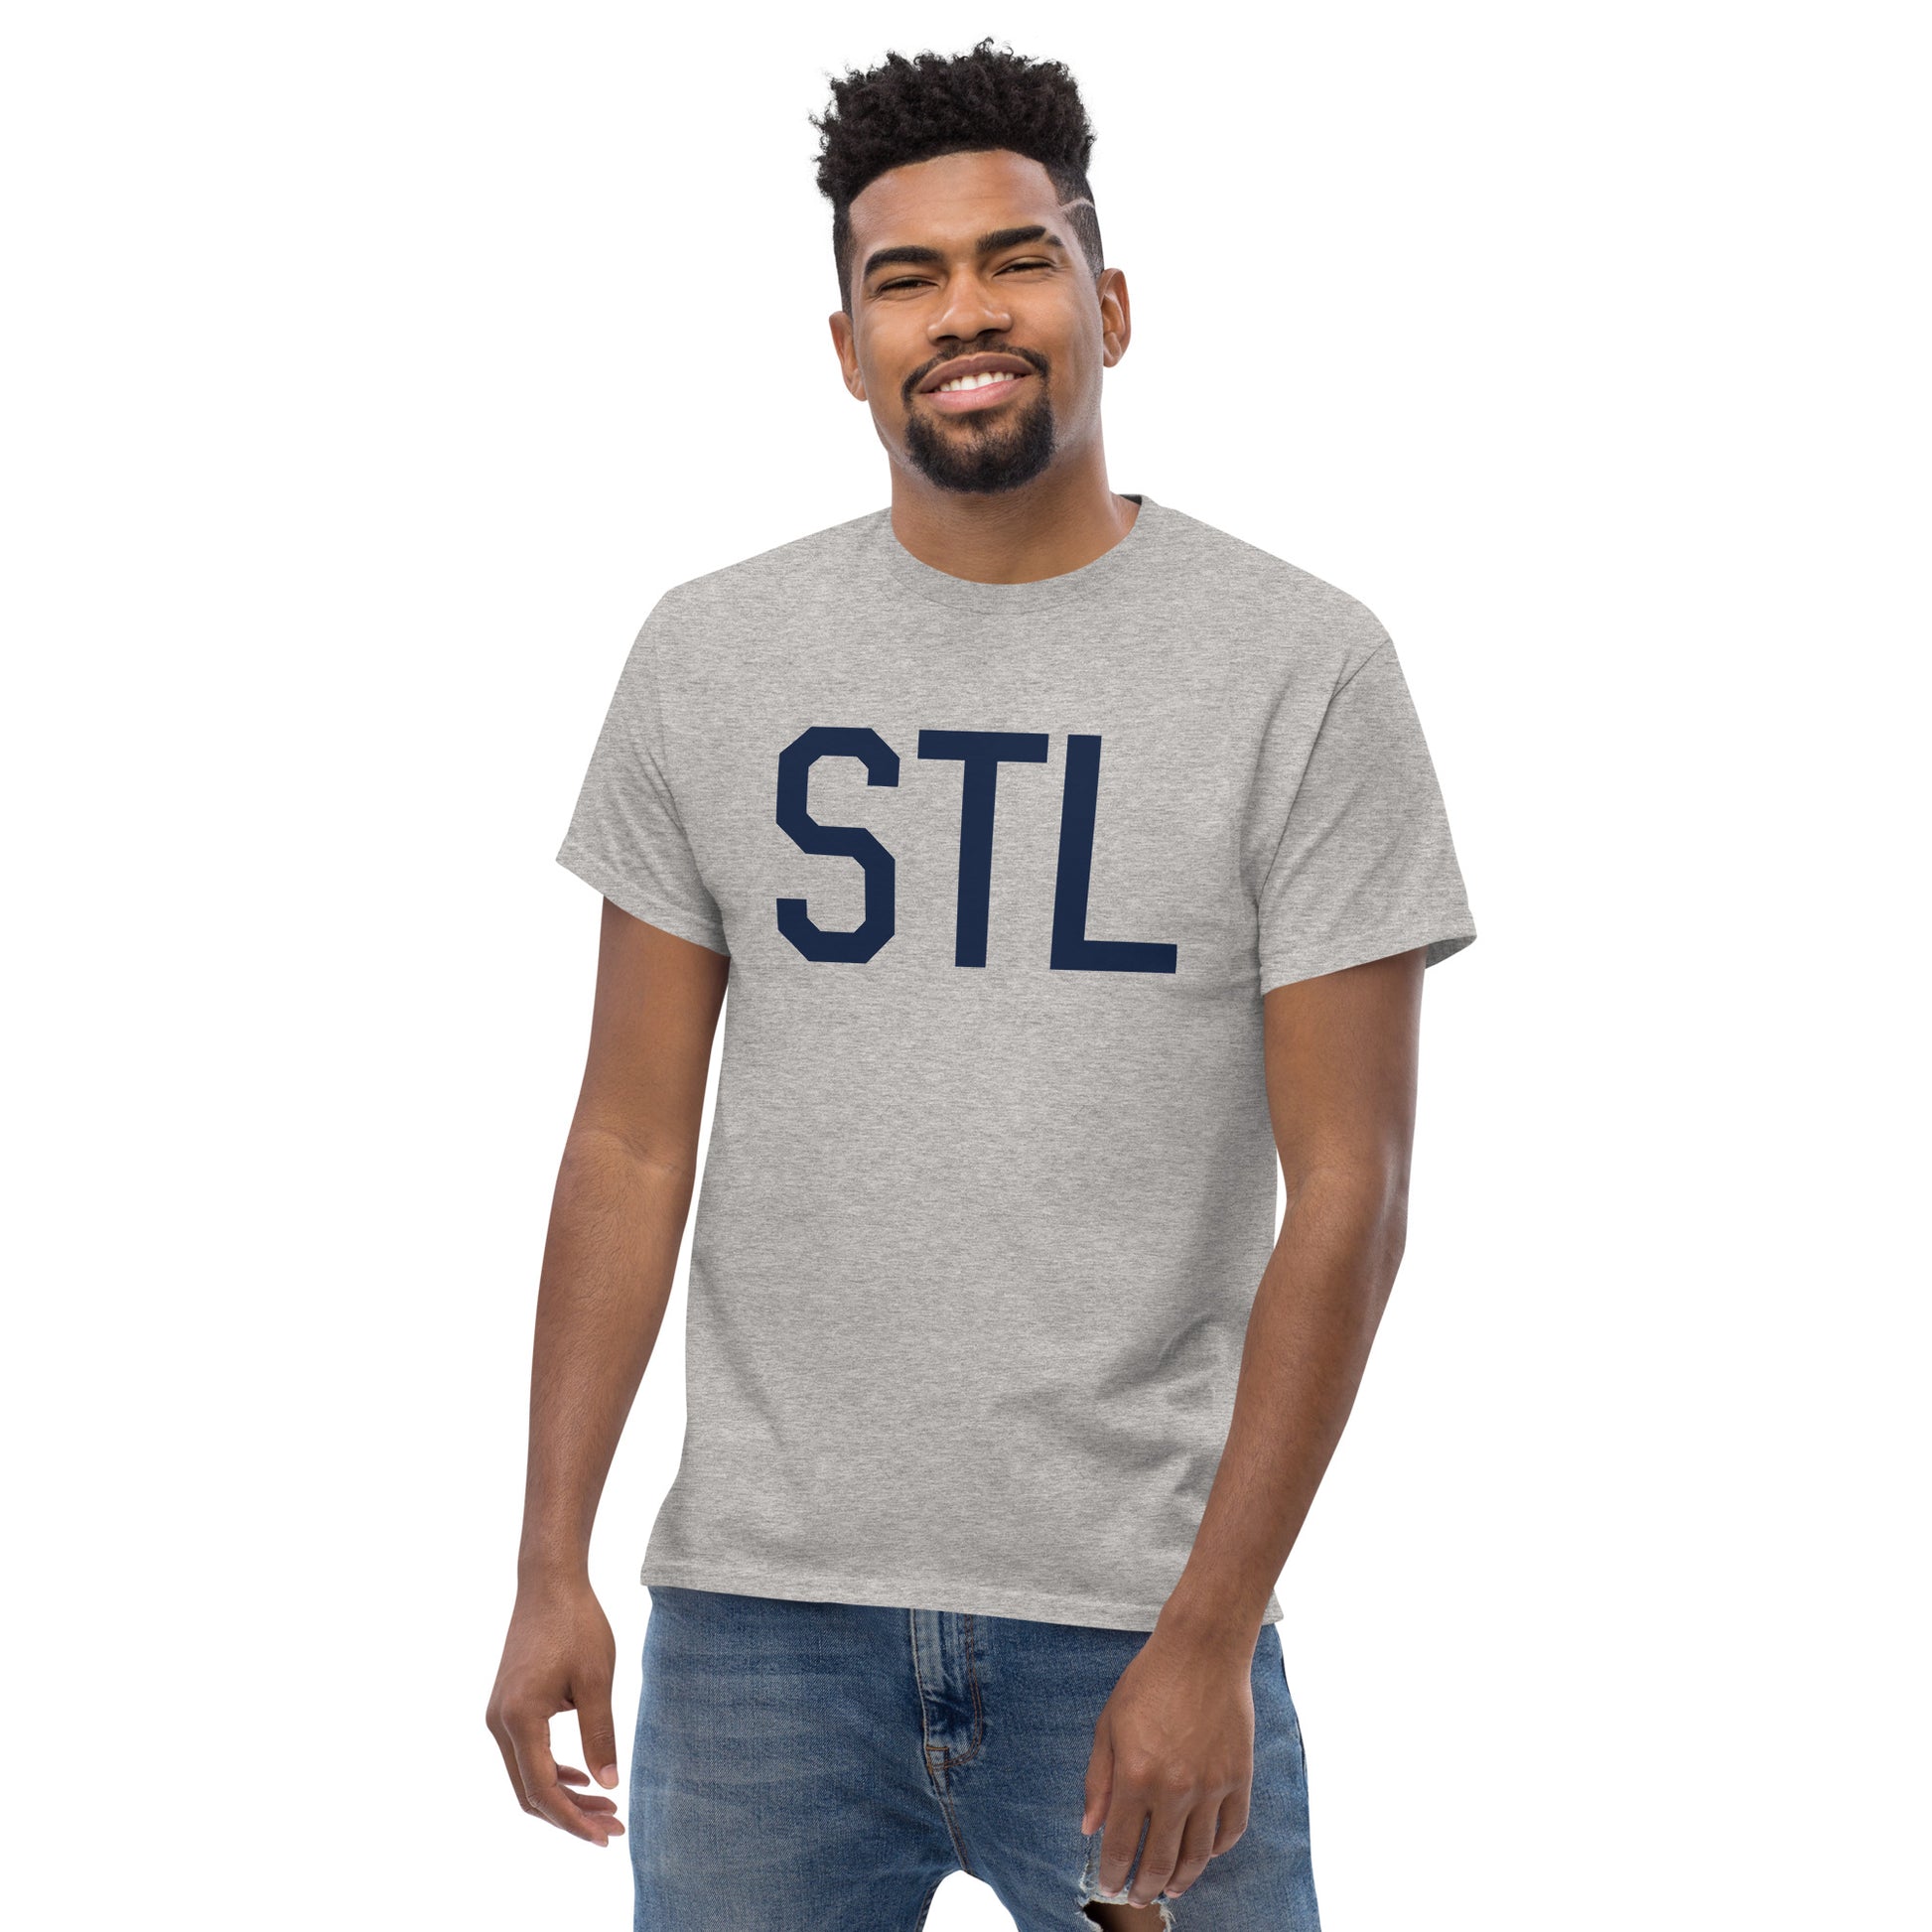 Aviation-Theme Men's T-Shirt - Navy Blue Graphic • STL St. Louis • YHM Designs - Image 06